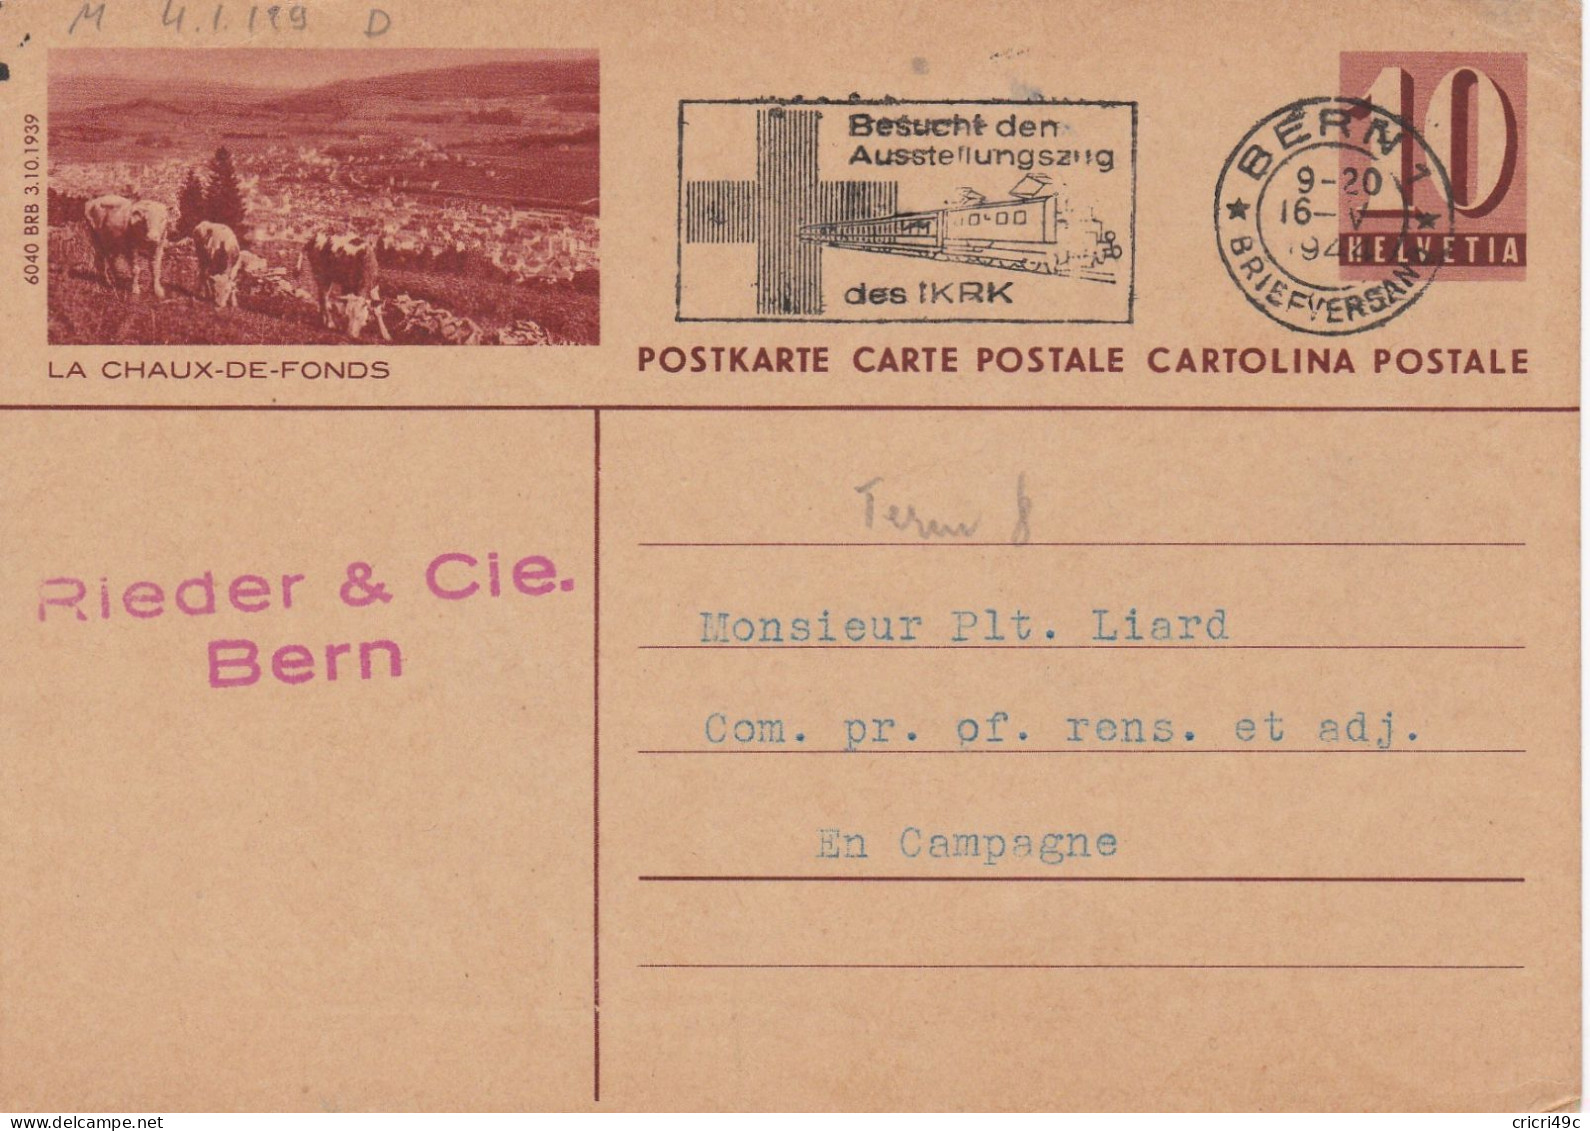 SUISSE Le 16 MaI 1944 Carte Postale De LA CHAUX-DE-FONDS - Lettres & Documents